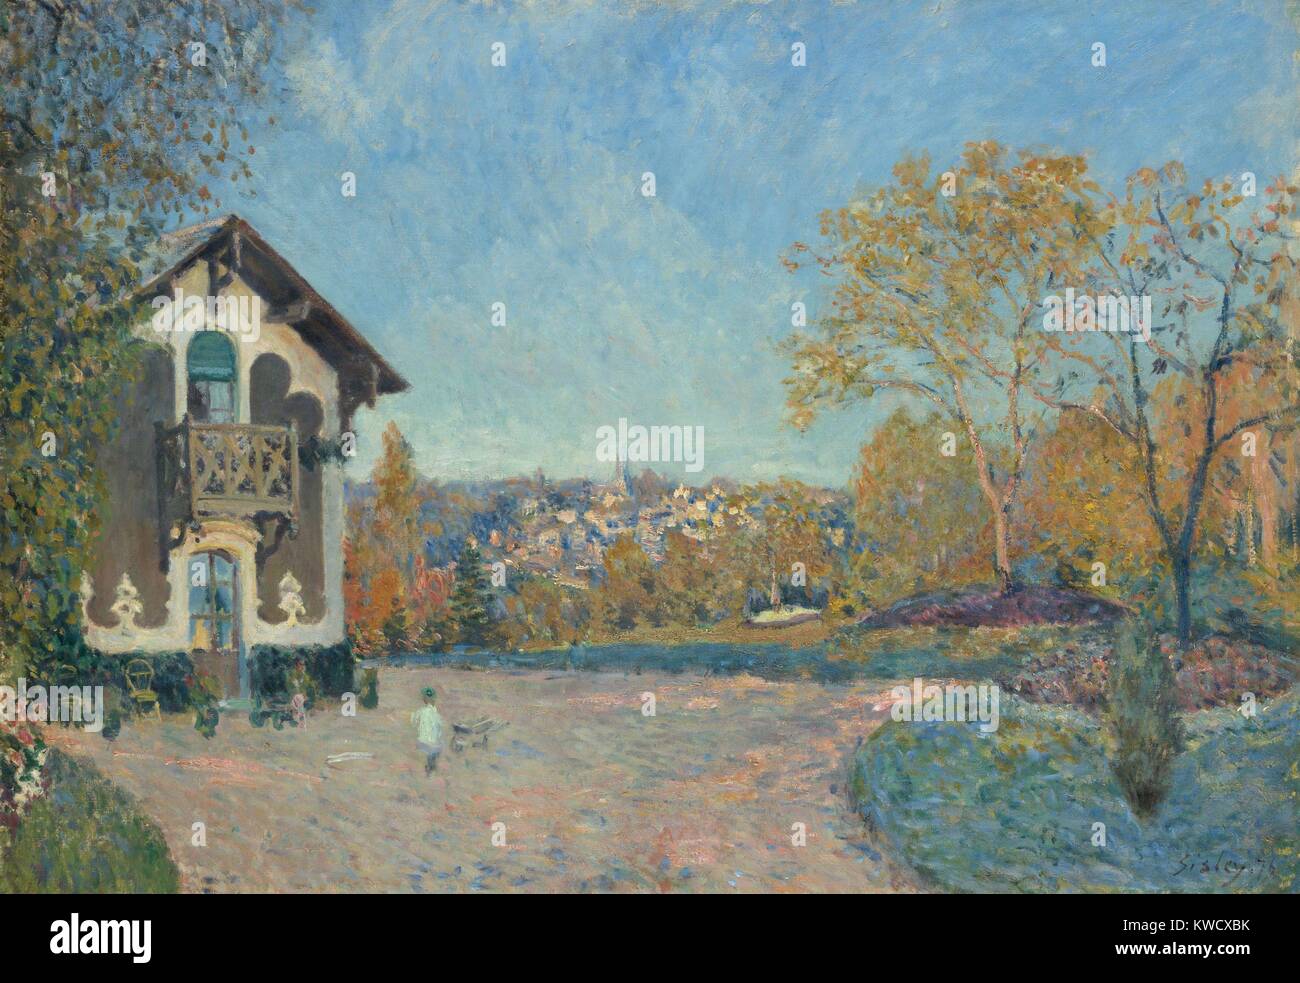 Anzeigen von Marly-le-Roi aus Coeur-Volant, von Alfred Sisley, 1876, französischer Impressionisten Öl Malerei. Sisleys, der die Anwendung komplementärer Farben Blau und Orange beleben diese unkonventionell aus Landschaft (BSLOC 2017 3 127) Stockfoto